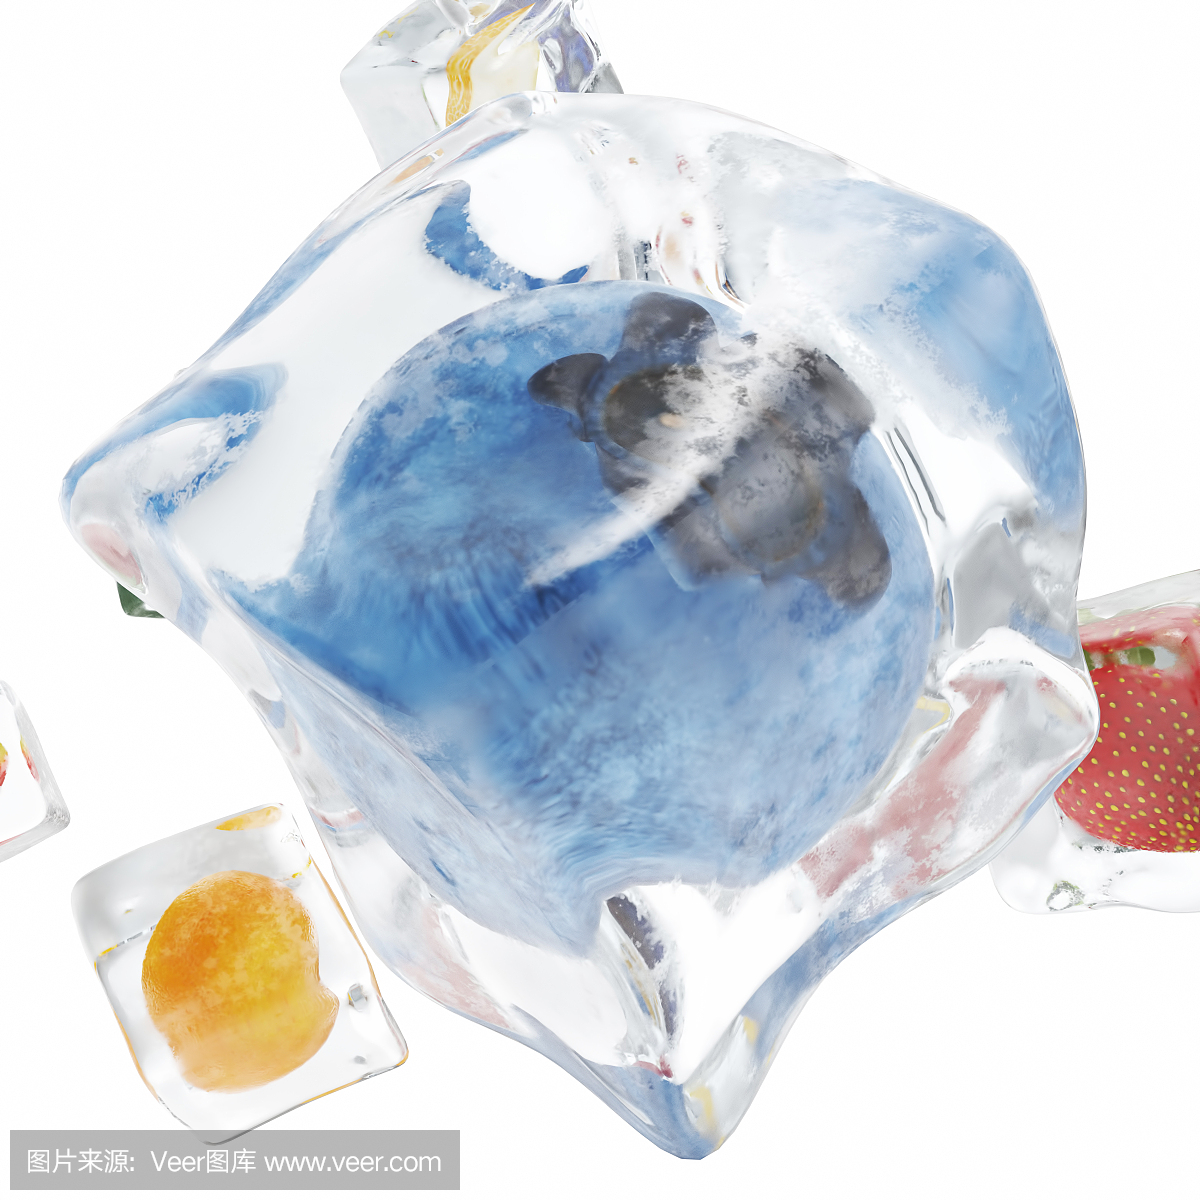 水果冻结在冰块,冰块在前视图,单个冰块隔绝在